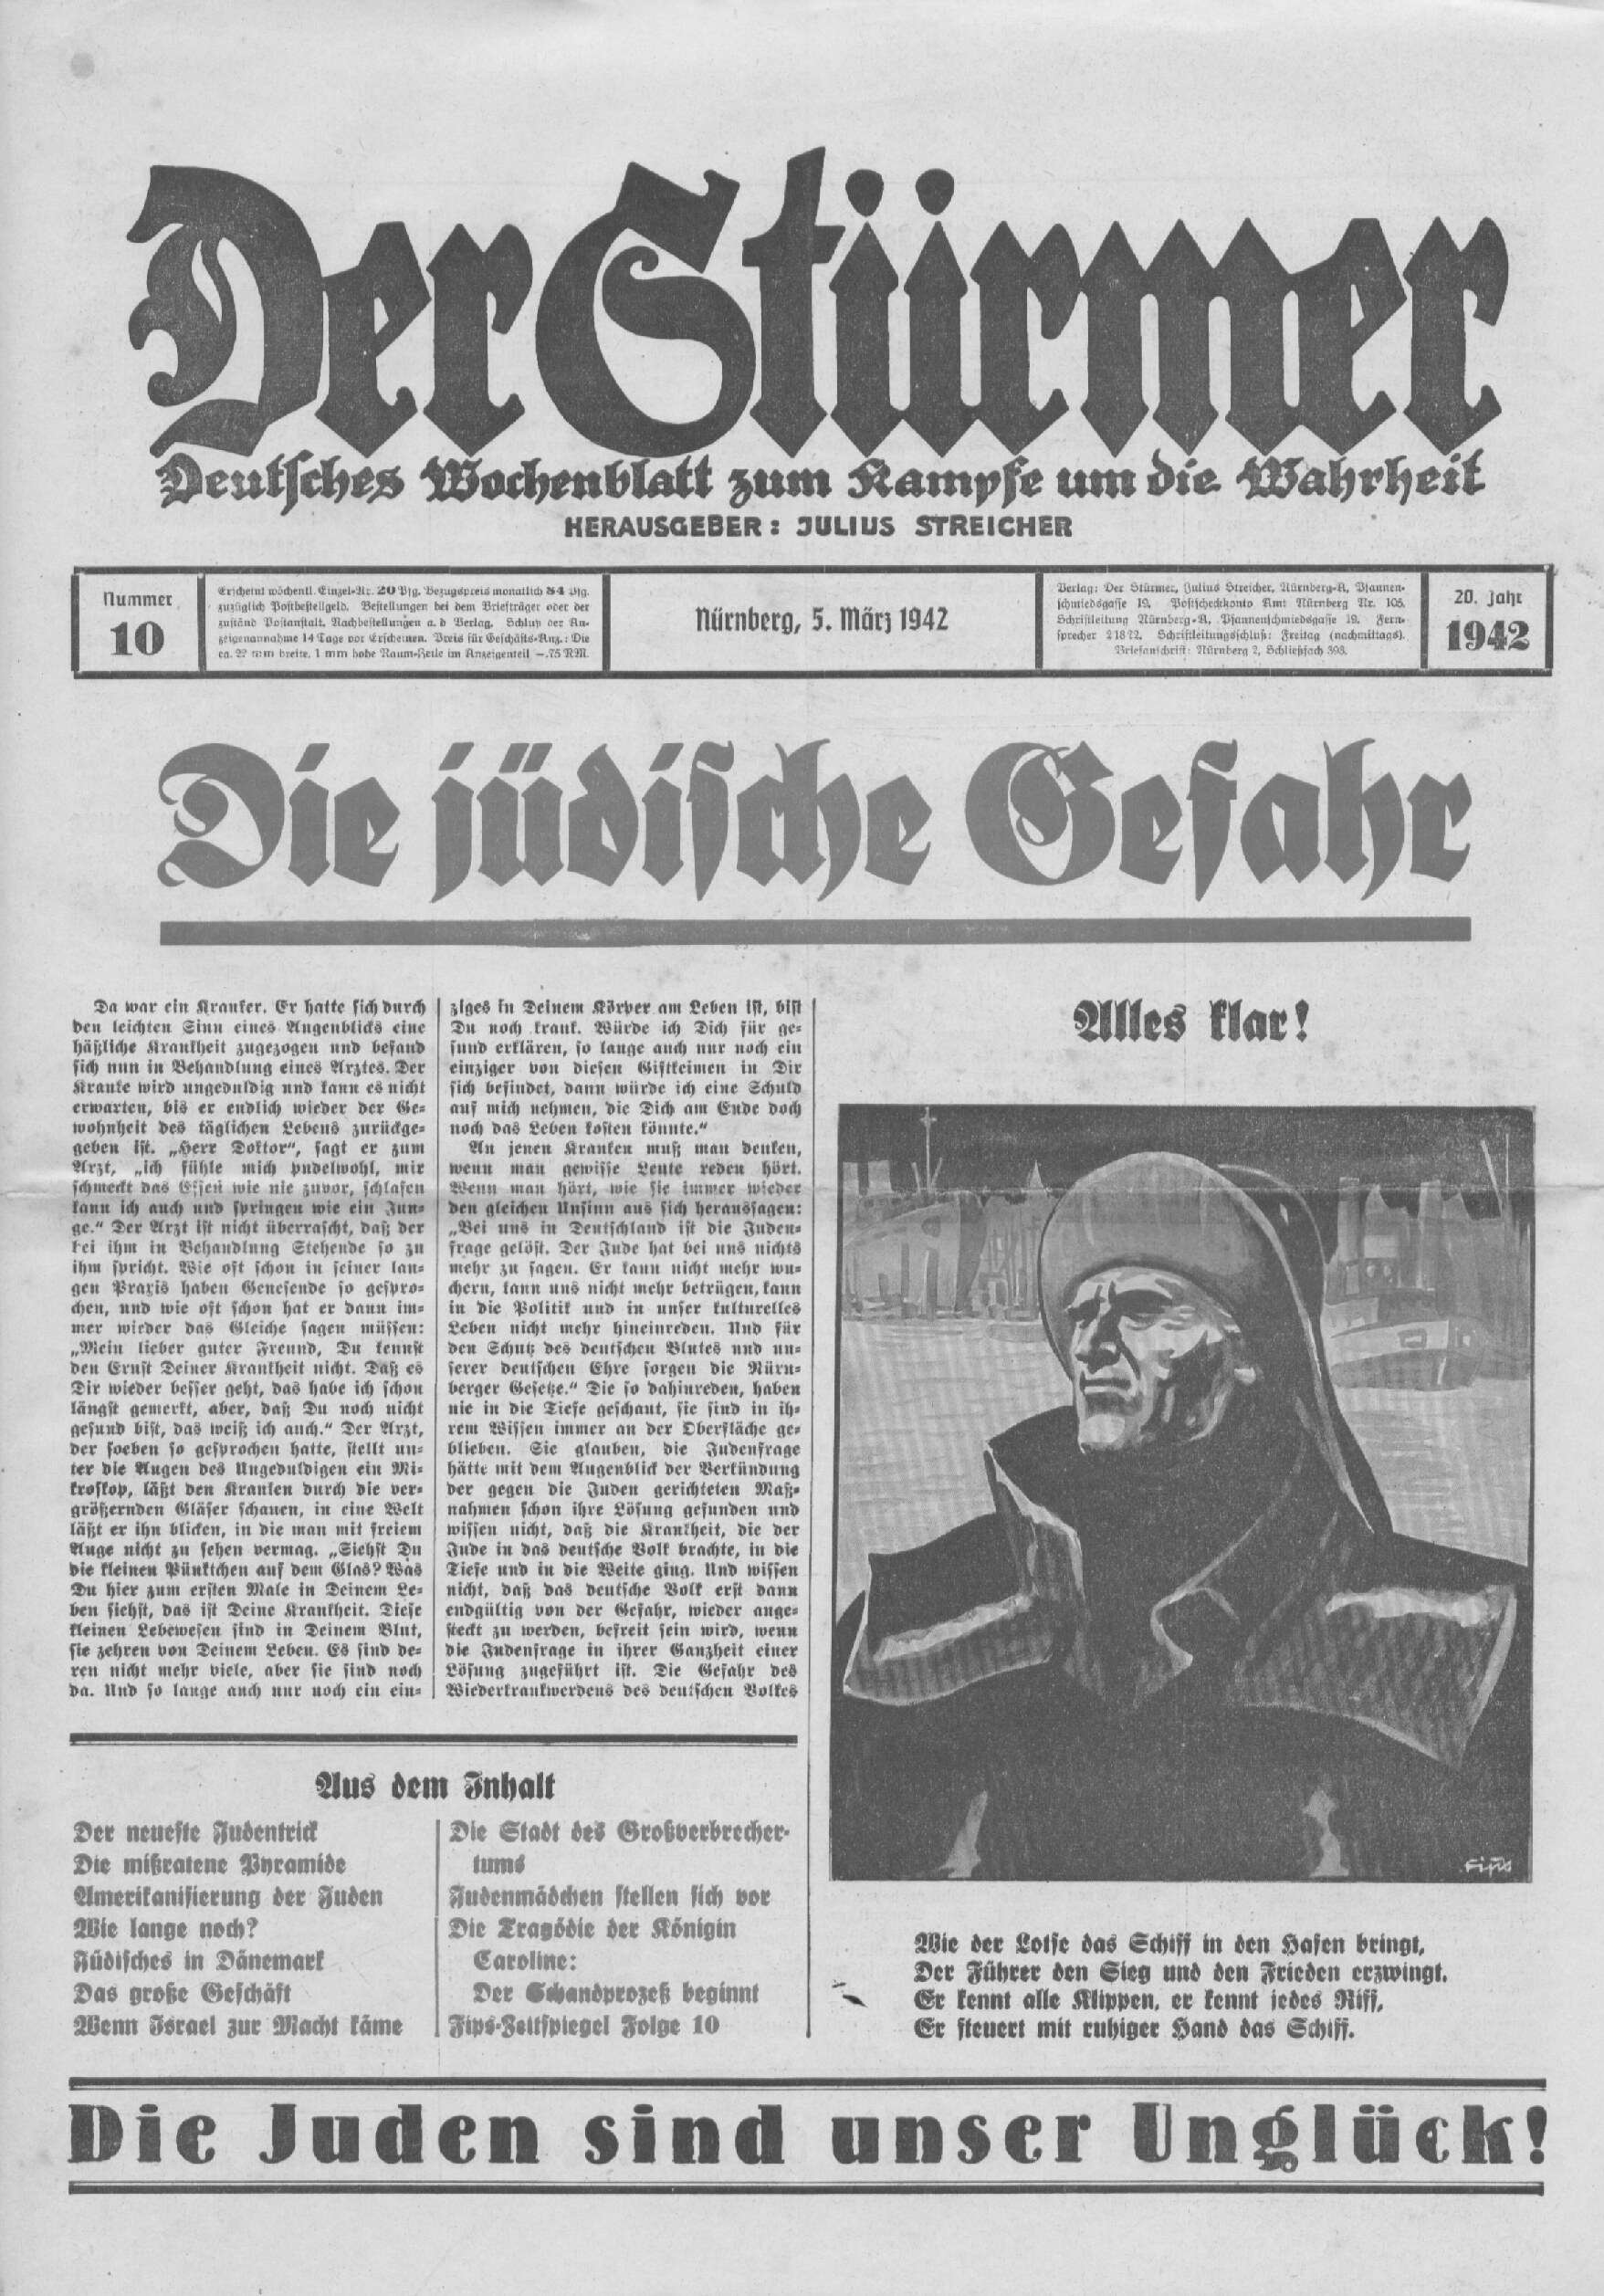 Der Stürmer - 1942 Nr. 10 - Die jüdische Gefahr